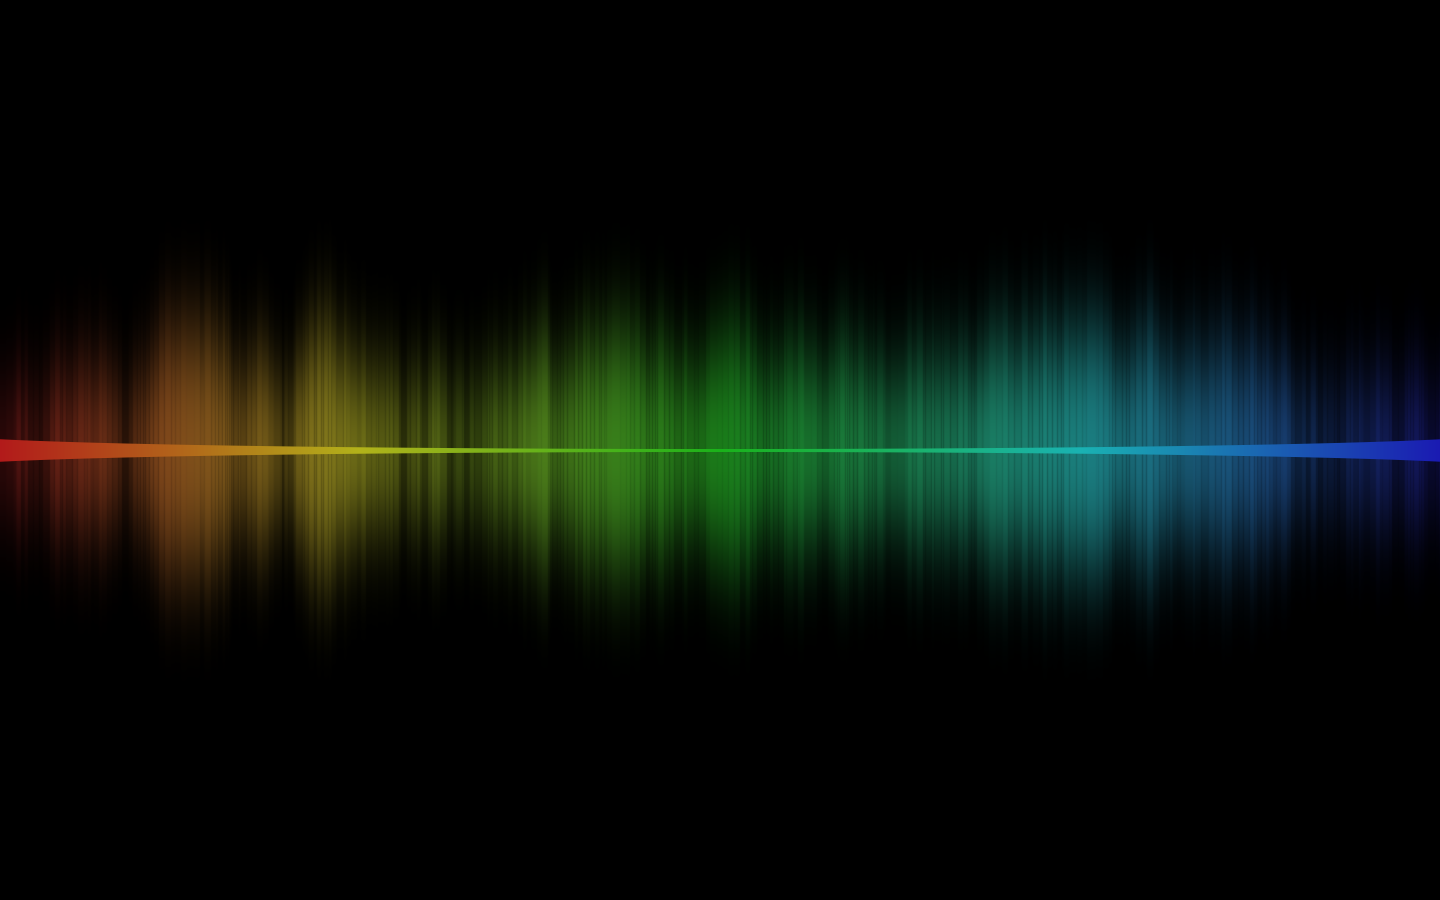 Musical Spectrum Analyzer